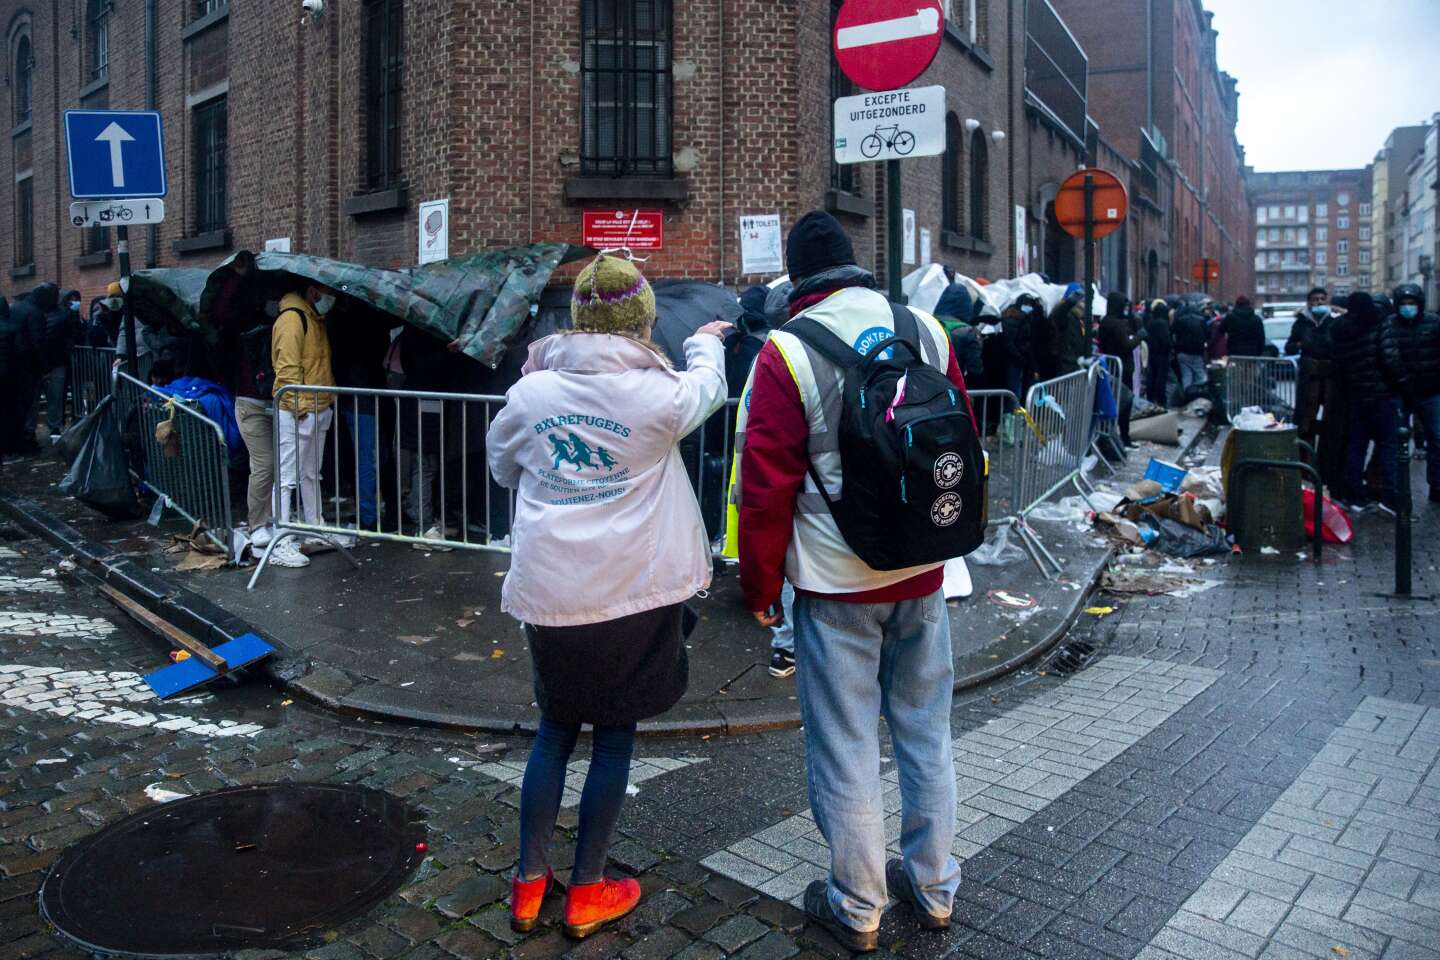 A Bruxelles, les demandeurs d'asile dorment dans la rue